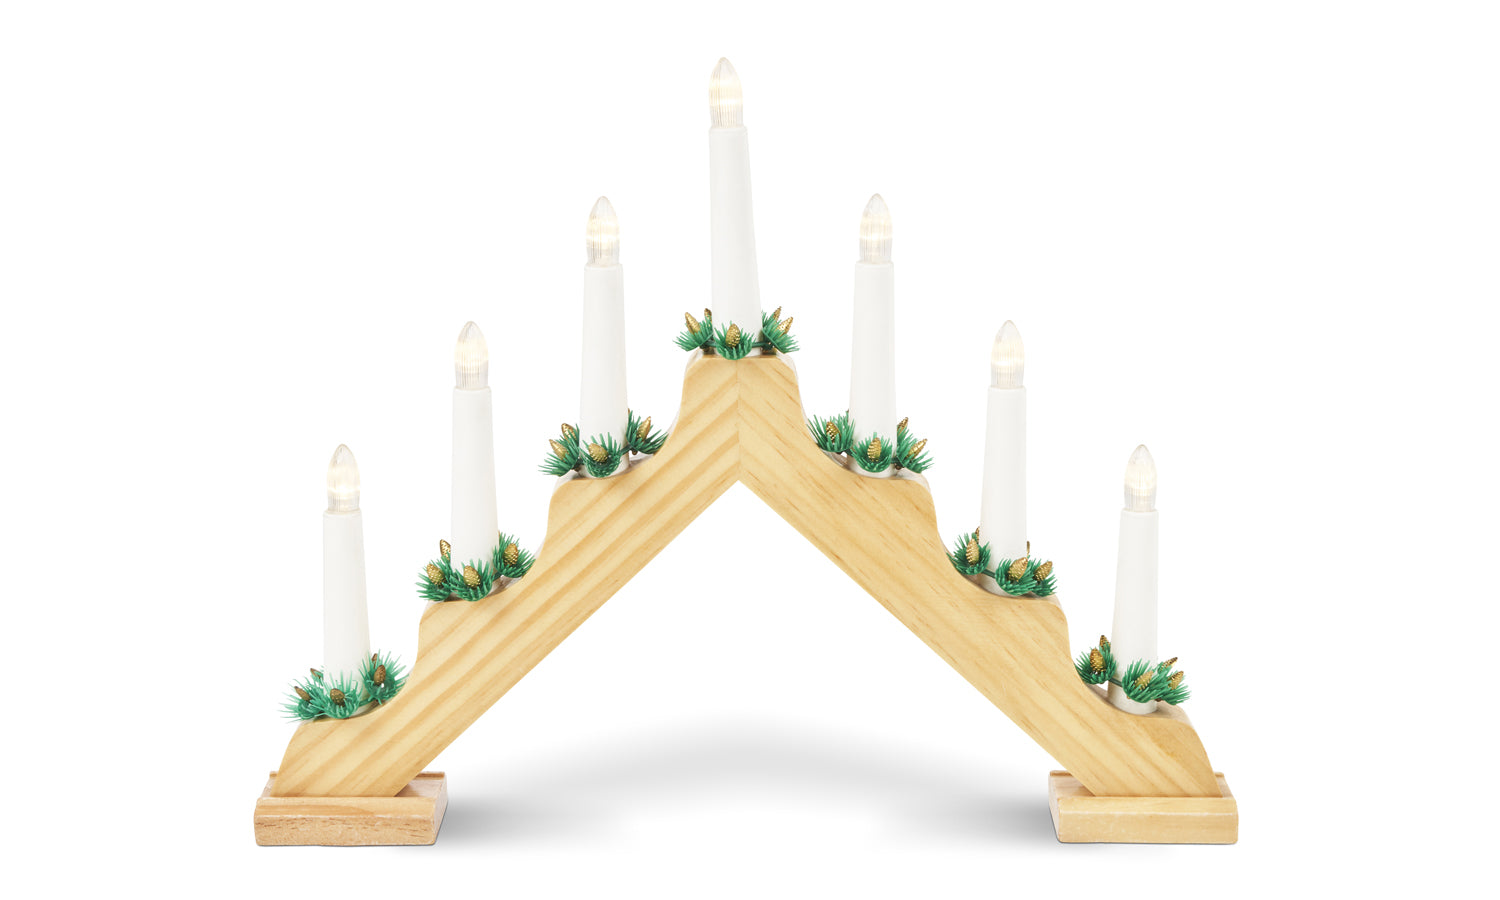 Wooden Christmas Candle Bridge